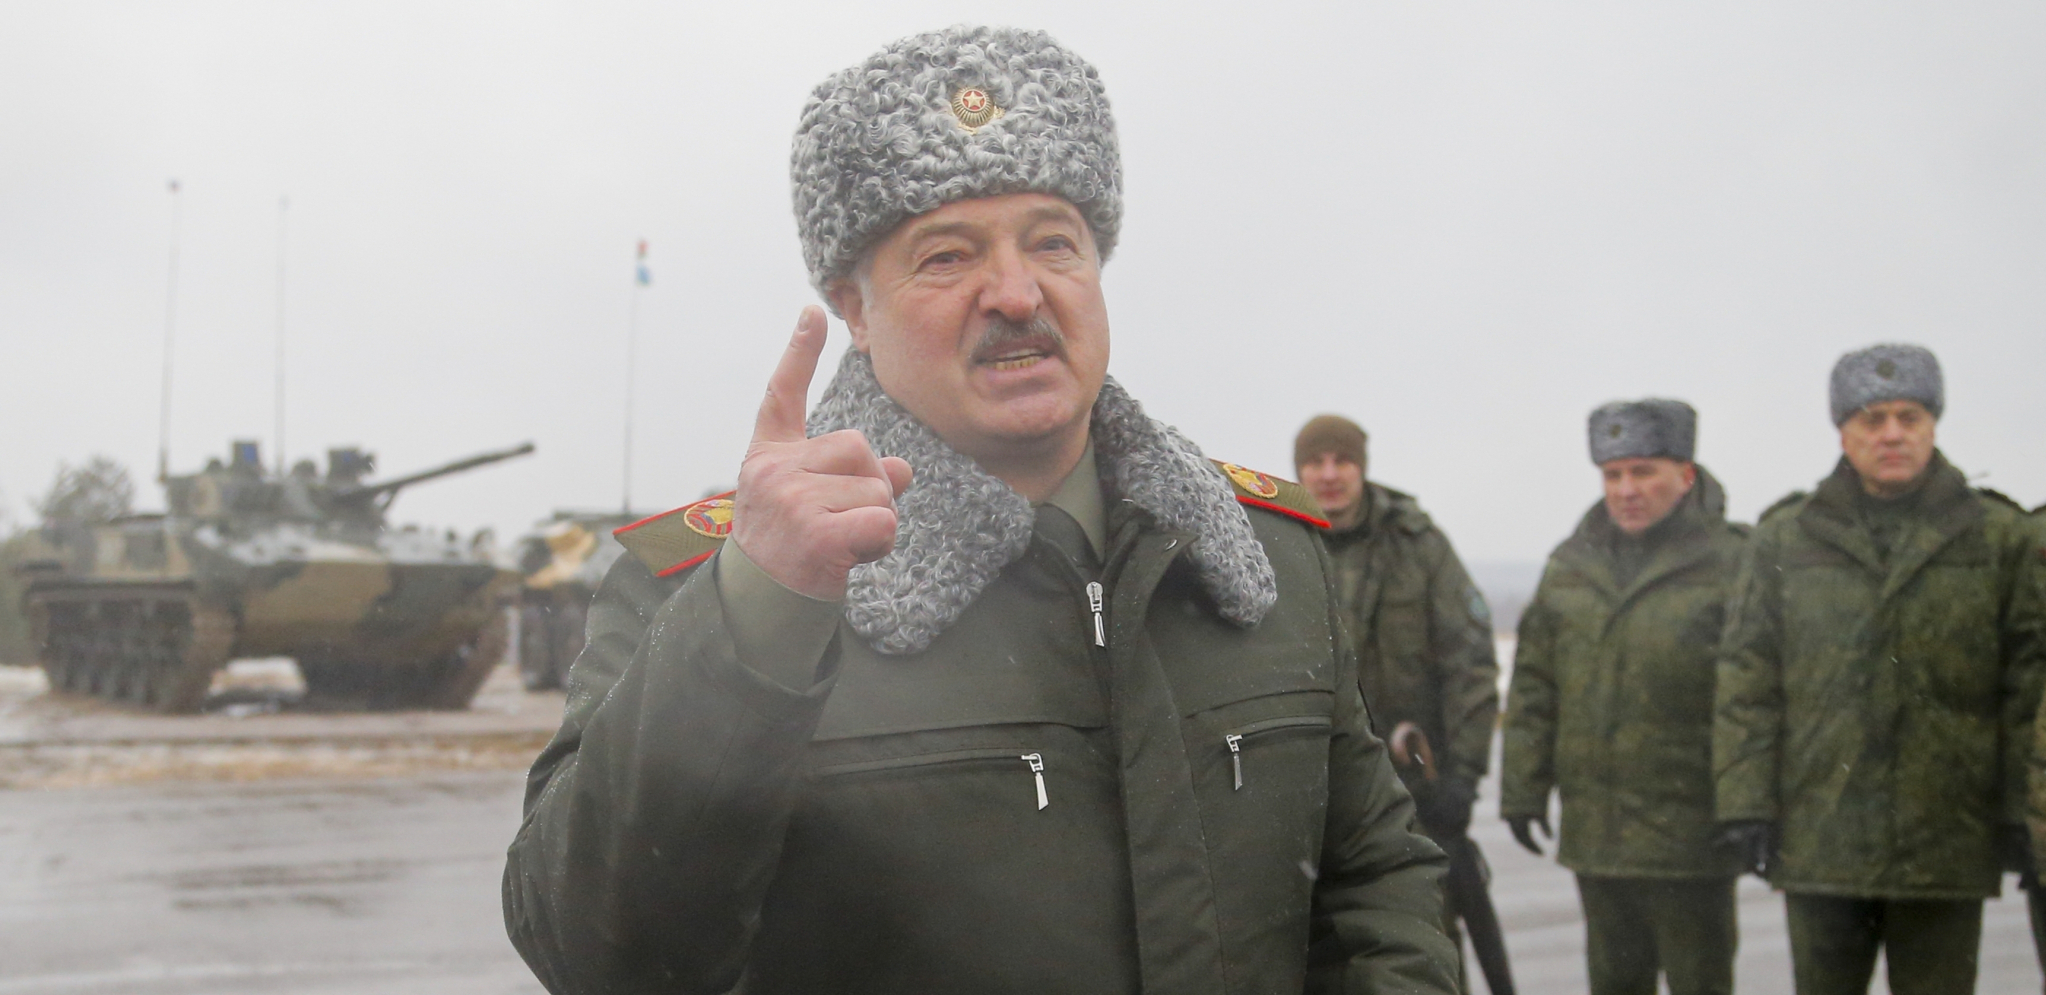 VANREDNO NAREĐENJE ALEKSANDRA LUKAŠENKA Belorusija formira dobrovoljačku teritorijalnu odbranu